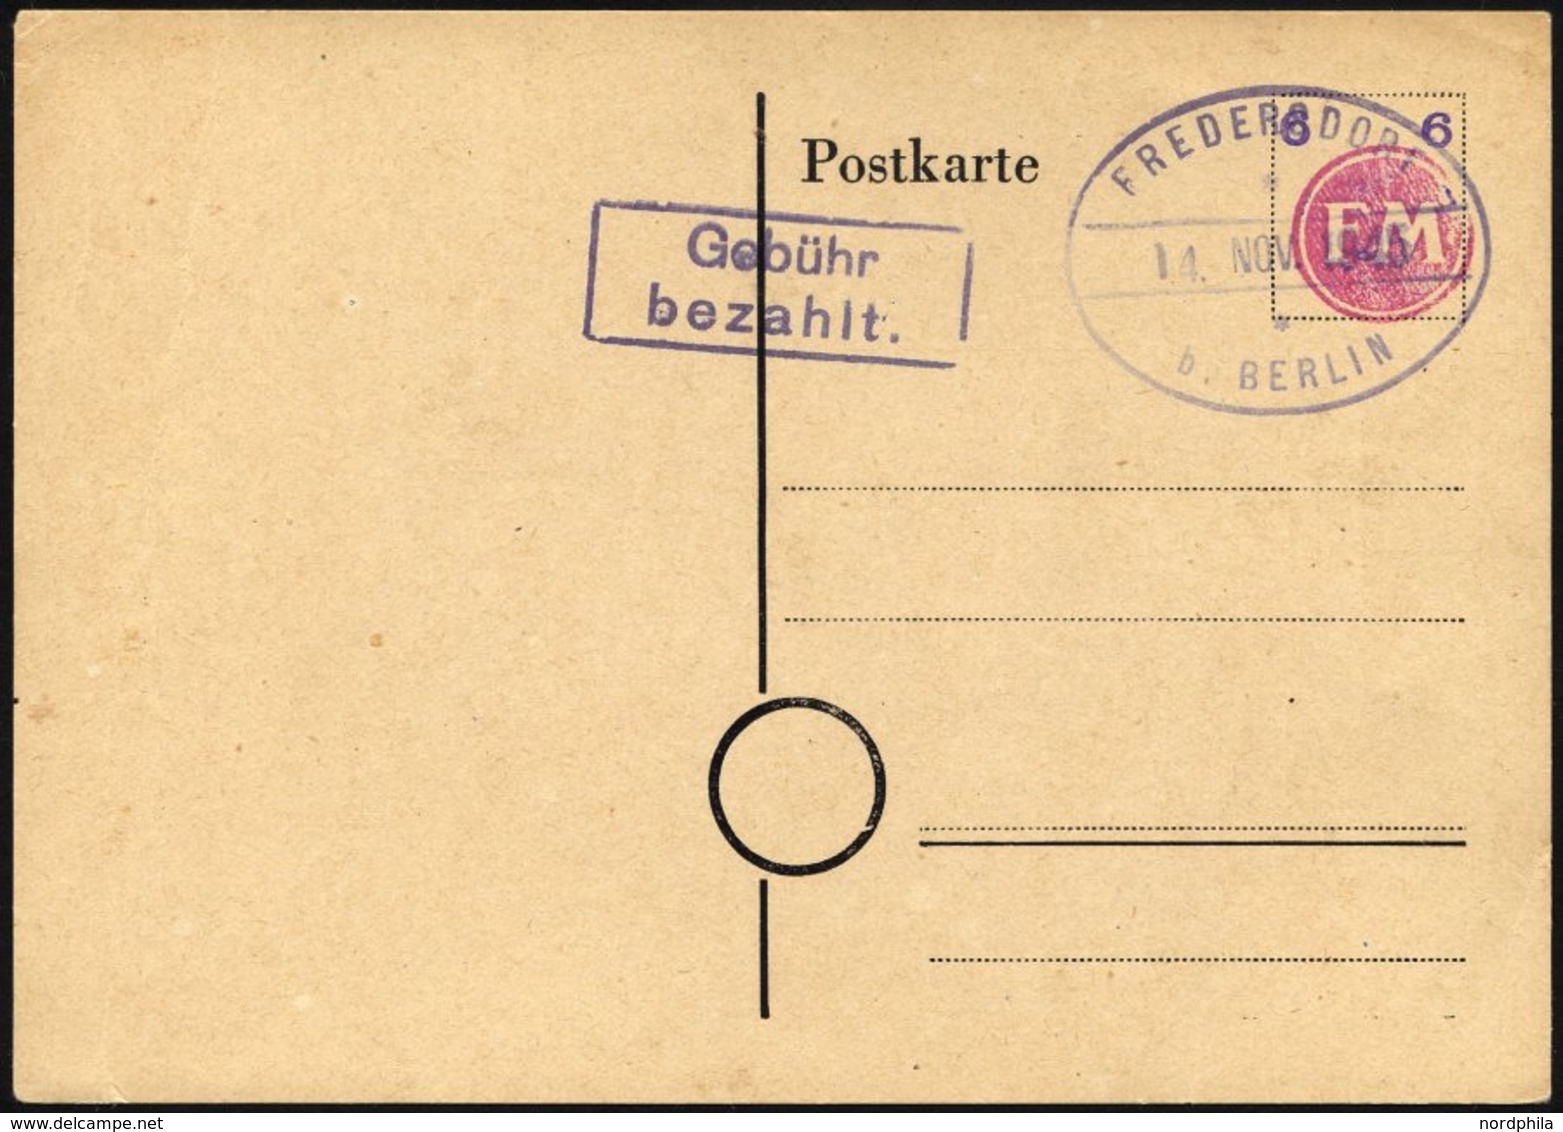 FREDERSDORF PA 02b BRIEF, 1945, Ganzsachenkarte 6 Pf. (FM Rosa Und Wertziffer Violett), Blanko Gestempelt, Pracht, R!, F - Private & Lokale Post